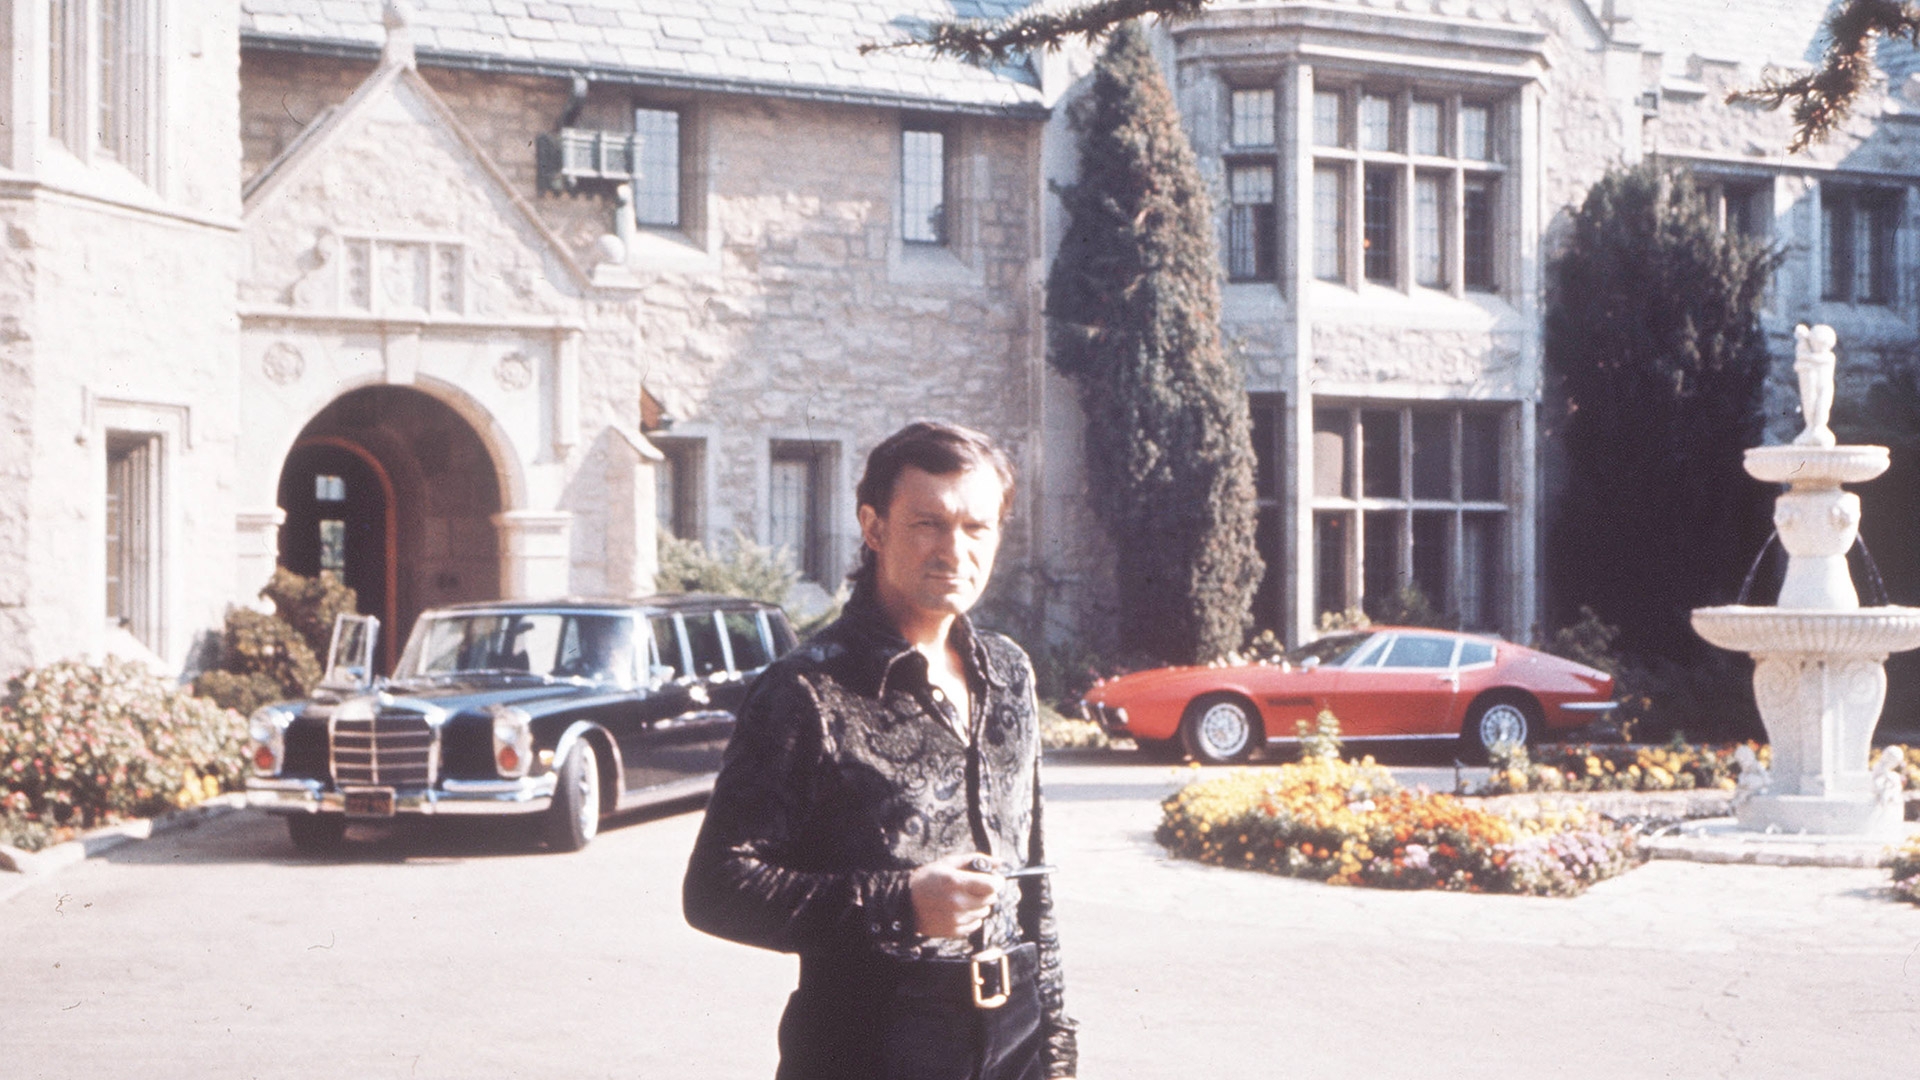 La mansión Playboy era uno de los principales centros de prostitución del empresario Hugh Hefne